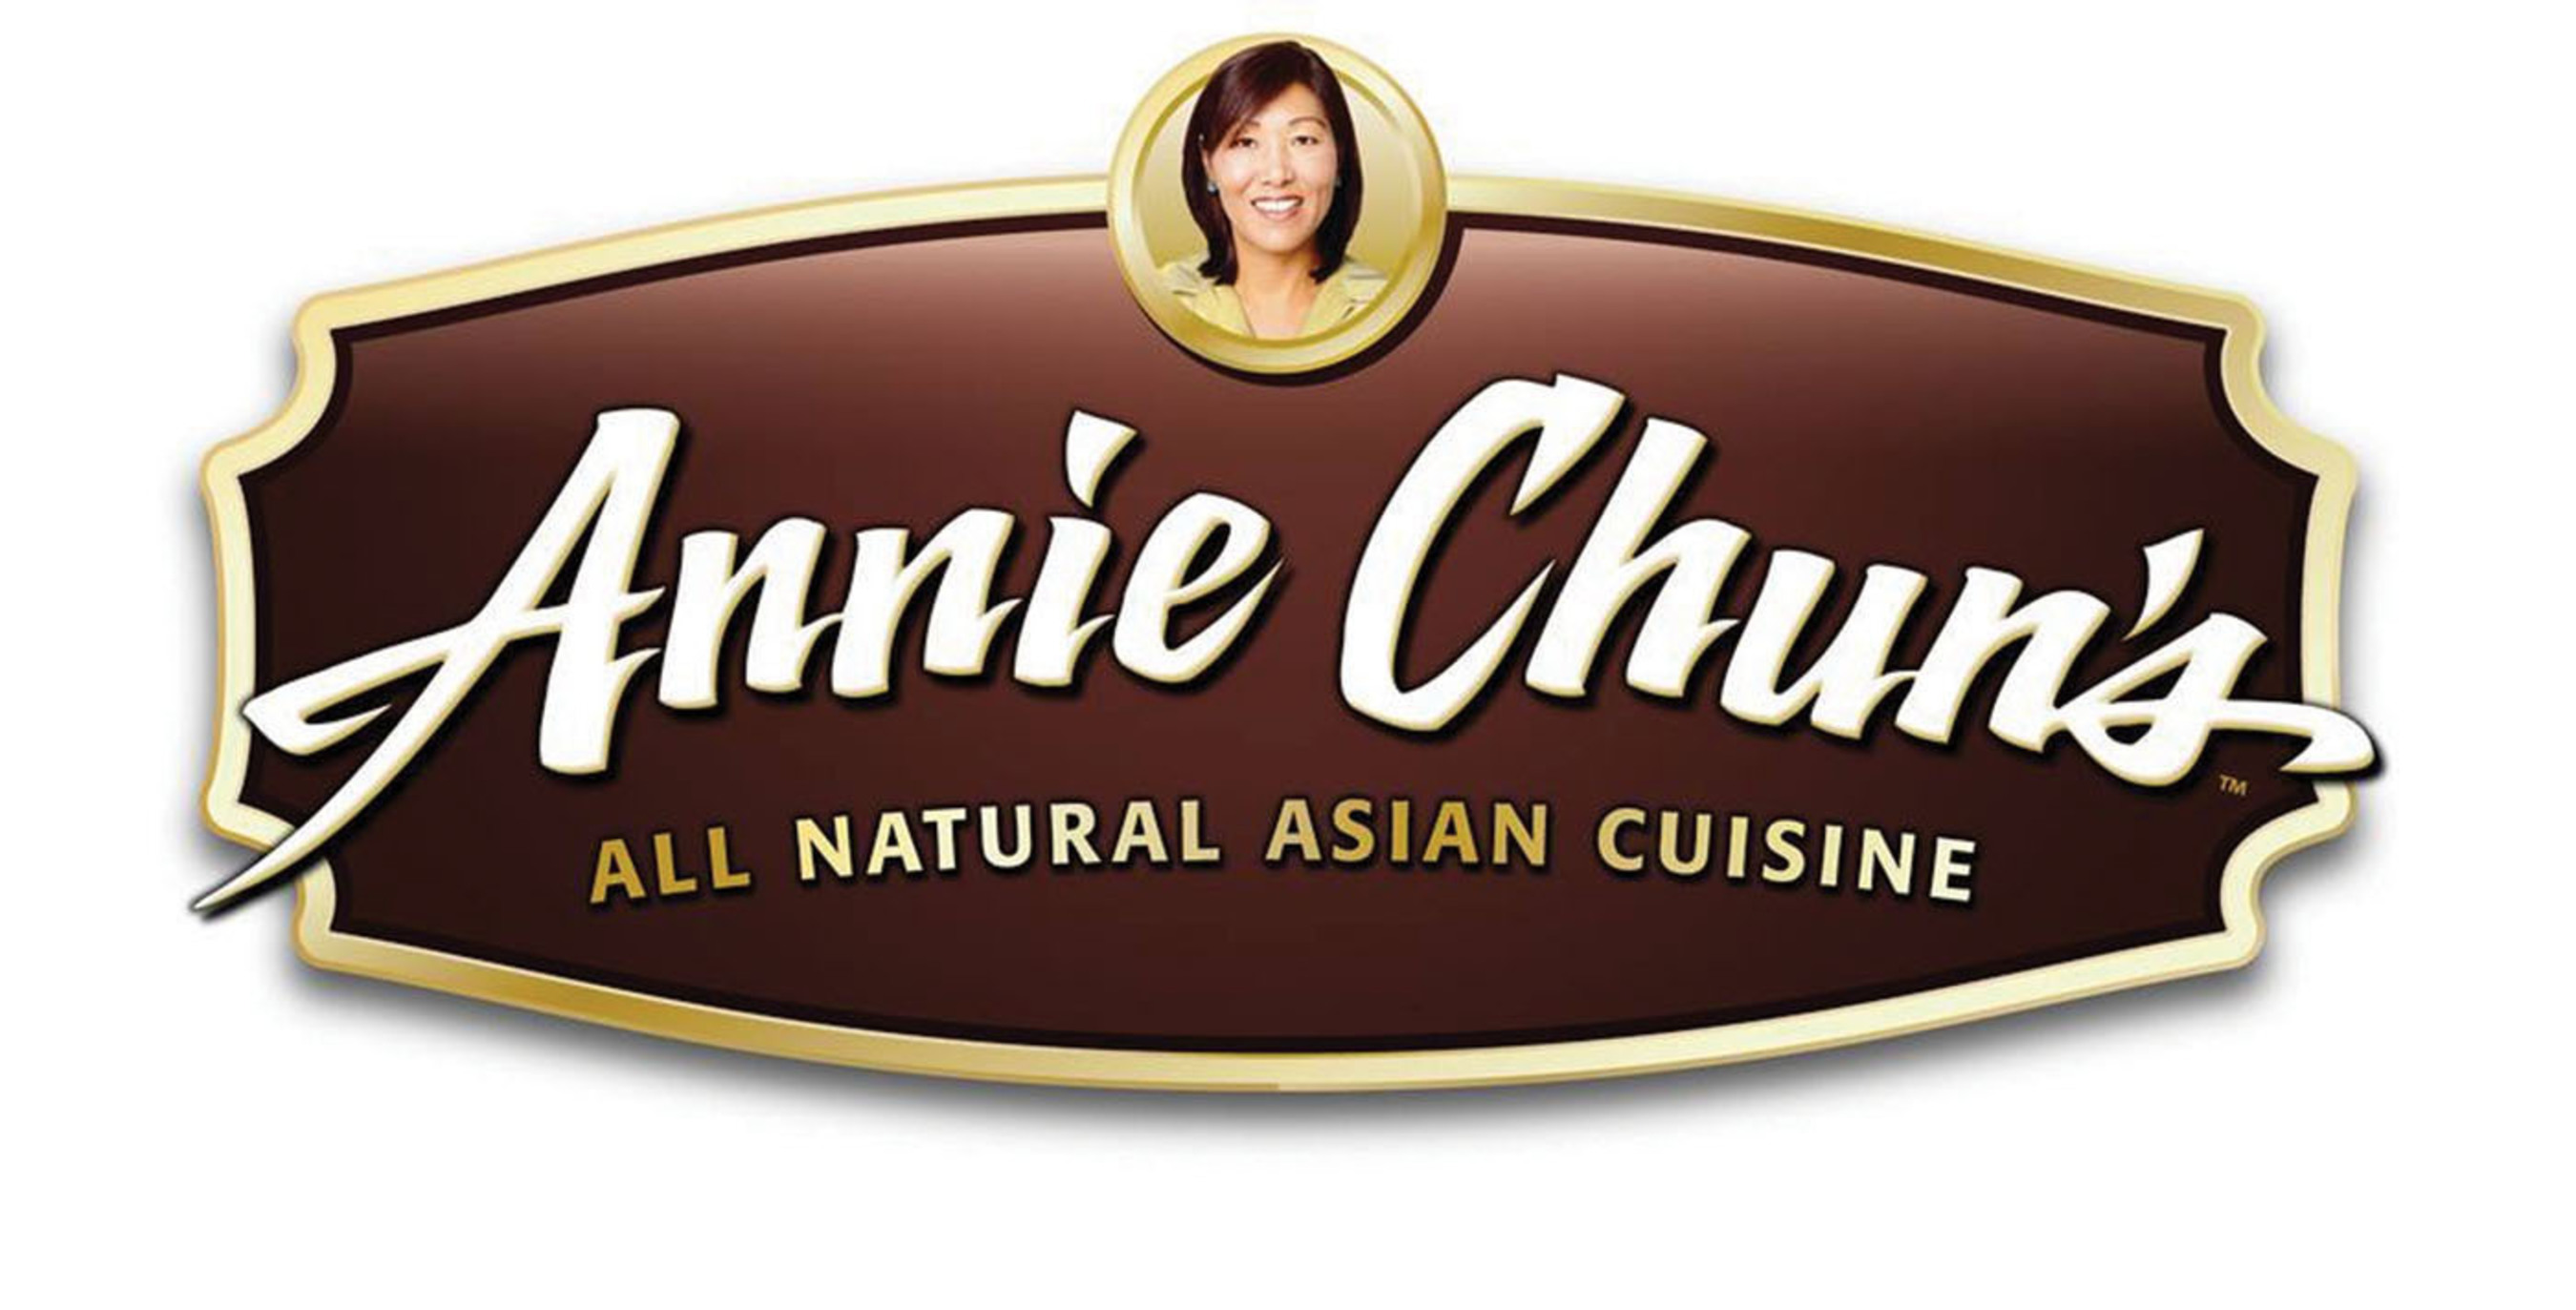 Annie Chun's Logo. (PRNewsFoto/Annie Chun's) (PRNewsFoto/ANNIE CHUN'S)